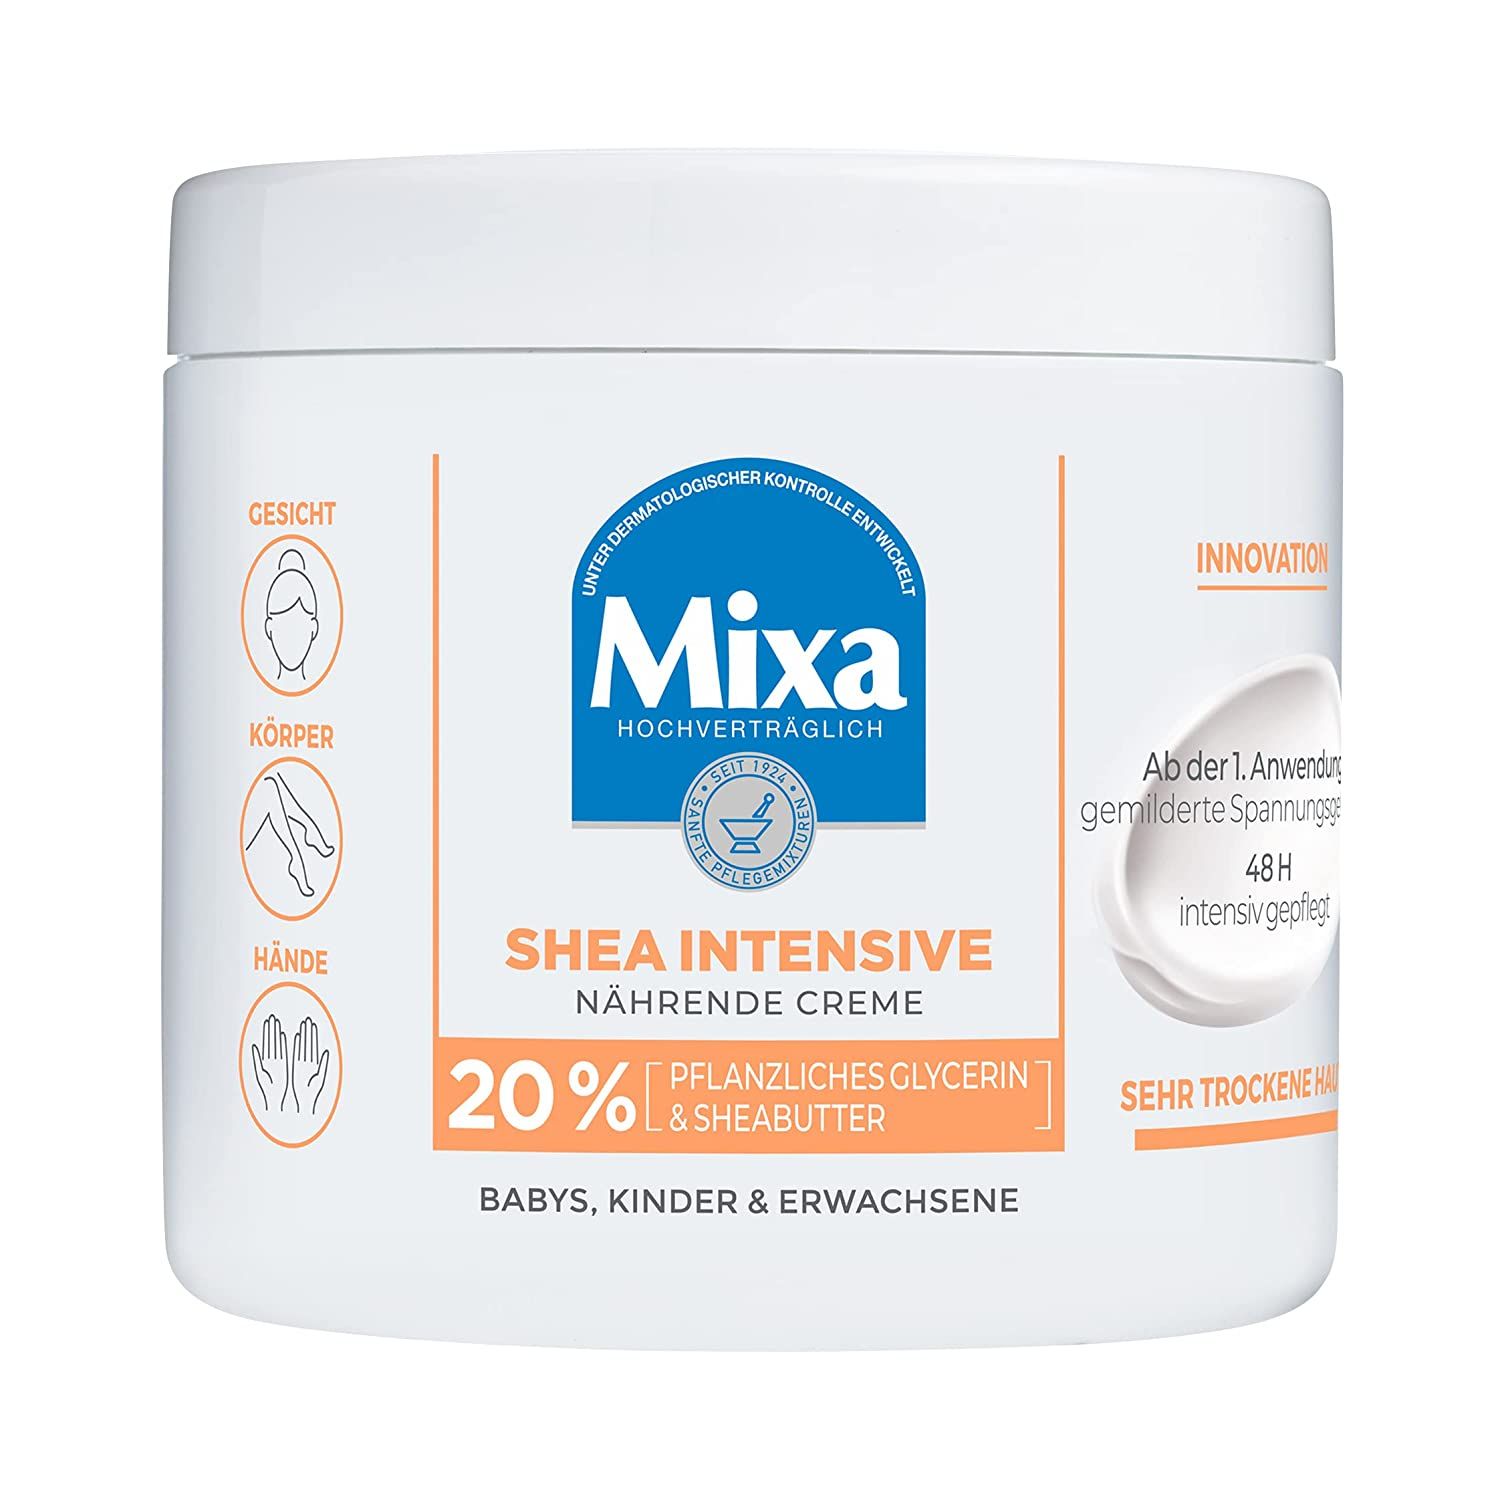 Mixa Intensive Nährende Creme mit 20% pflanzlichem Glycerin und Sheabutter für sehr trockene Haut